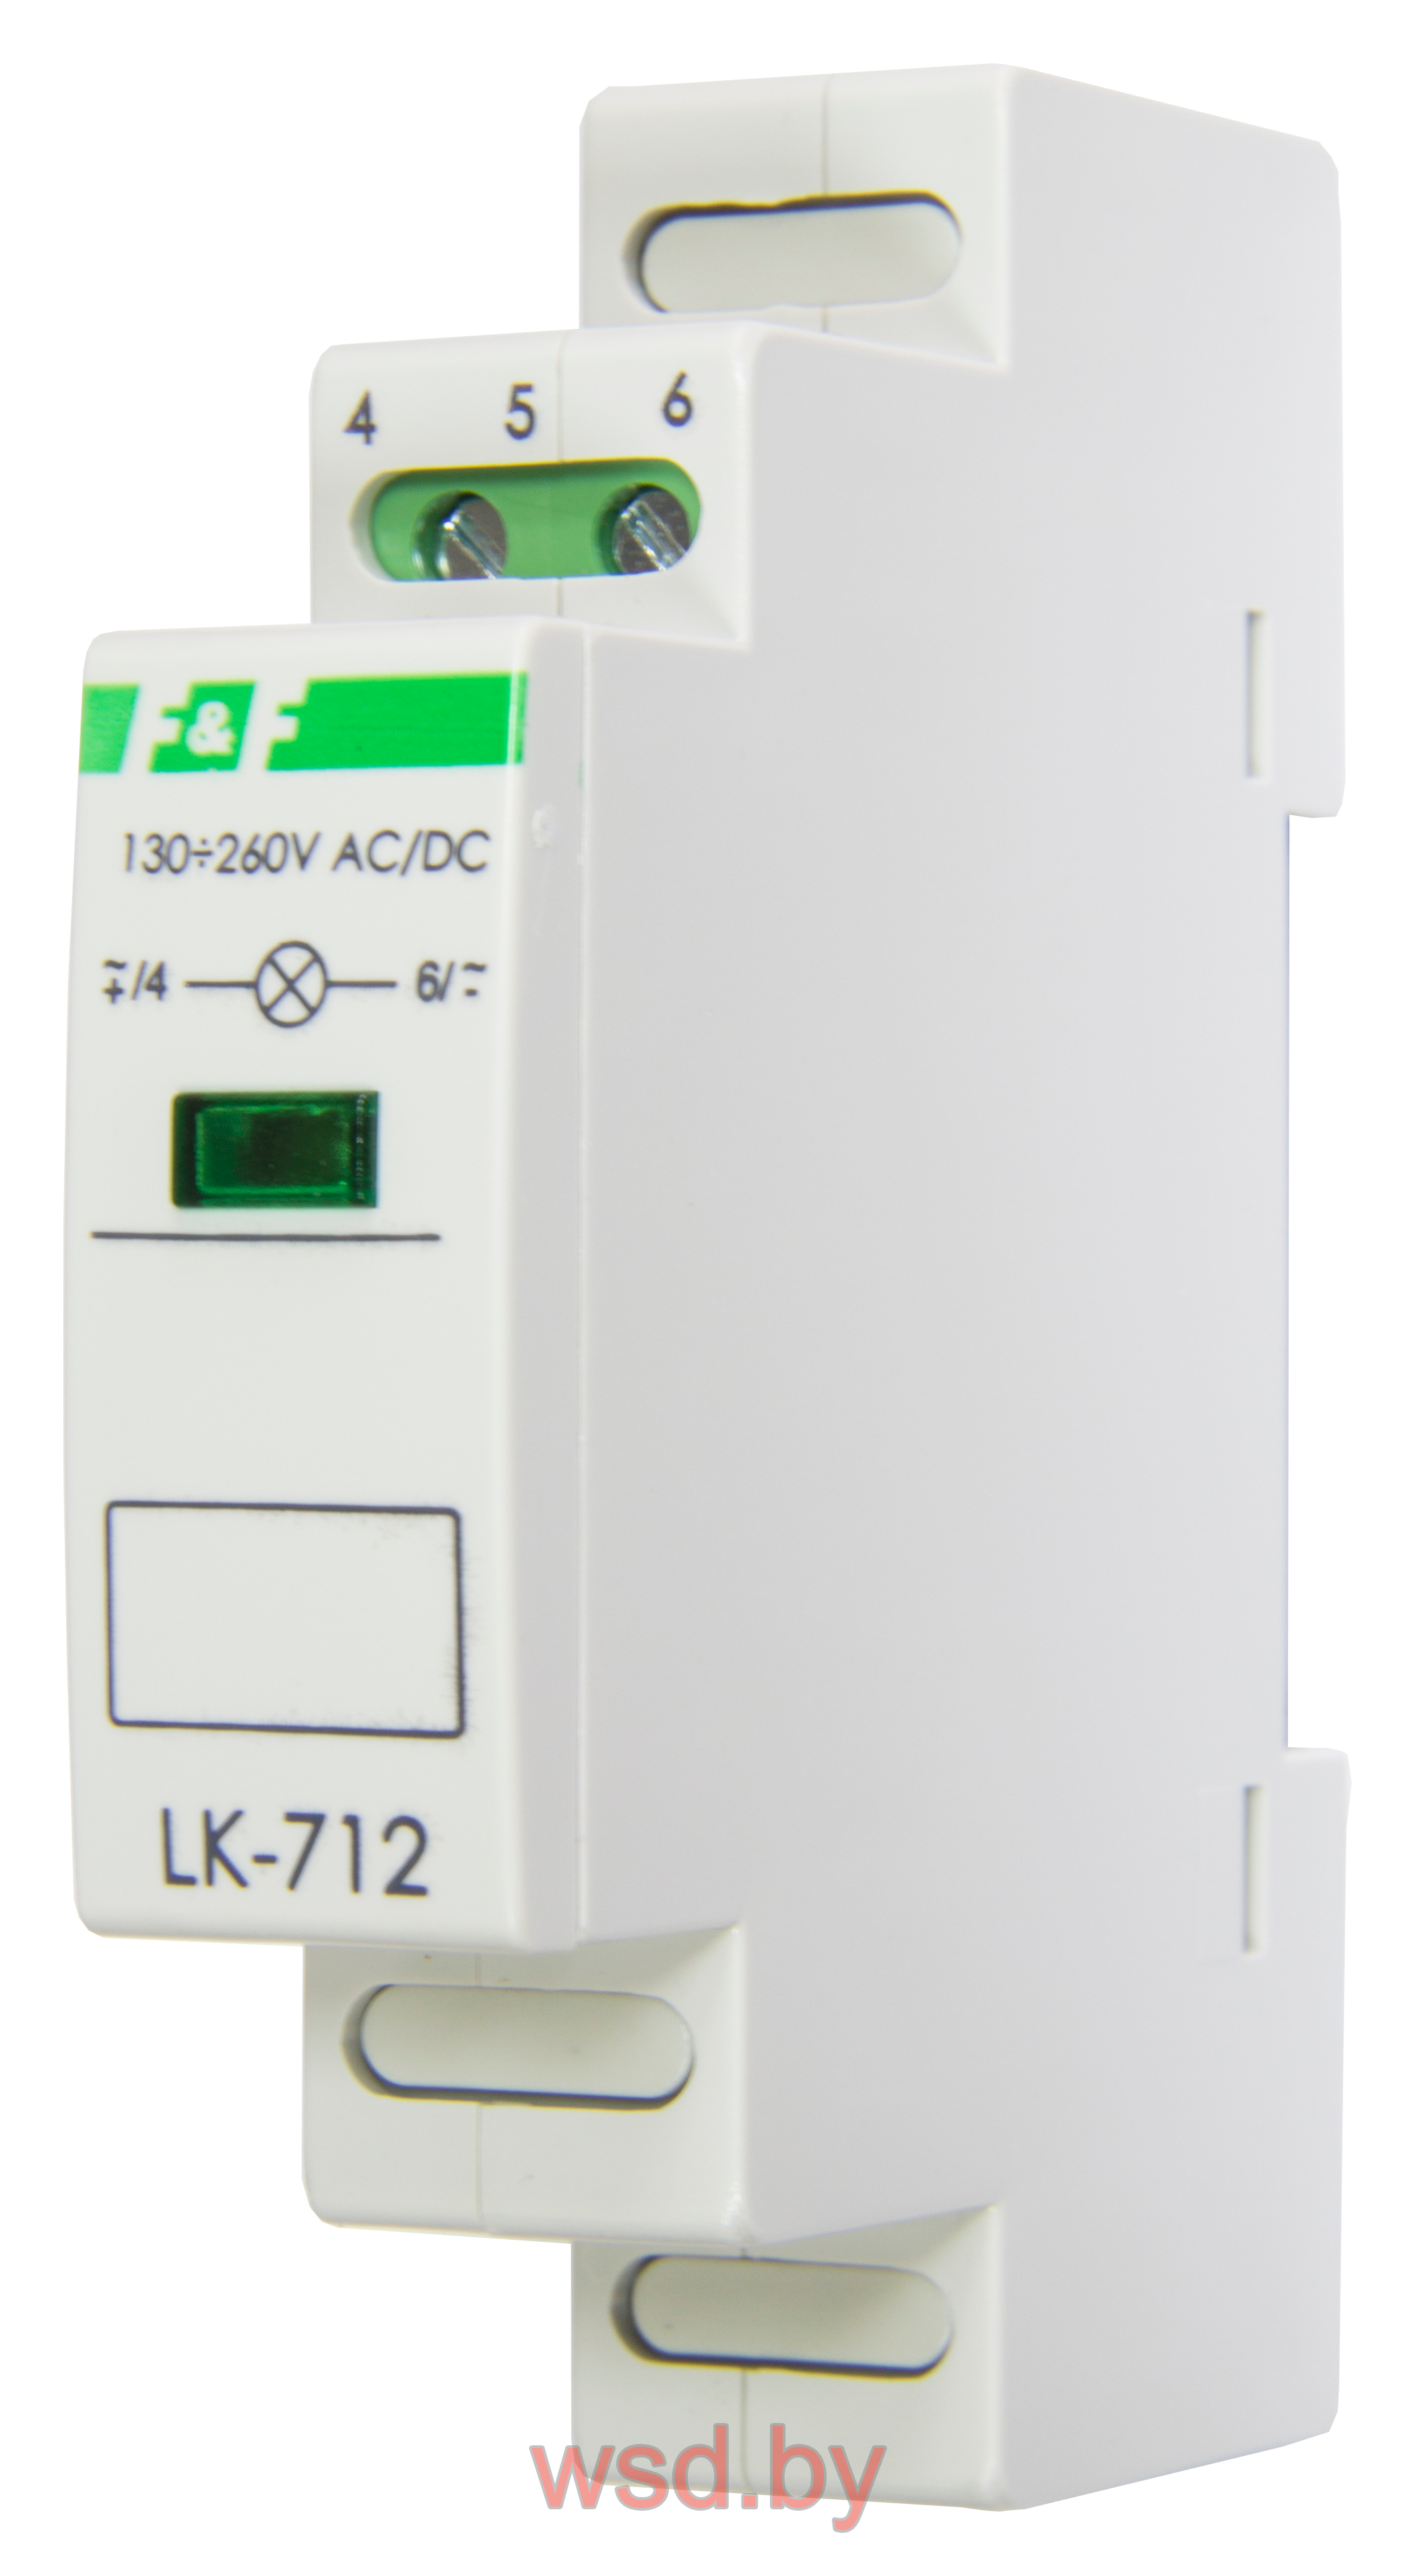 Указатель напряжения LK-712-Y-2 сигнализация наличия одной фазы, цвет ЖЁЛТЫЙ,  1 модуль, монтаж на DIN-рейке 10-30 В AC/DC IP20